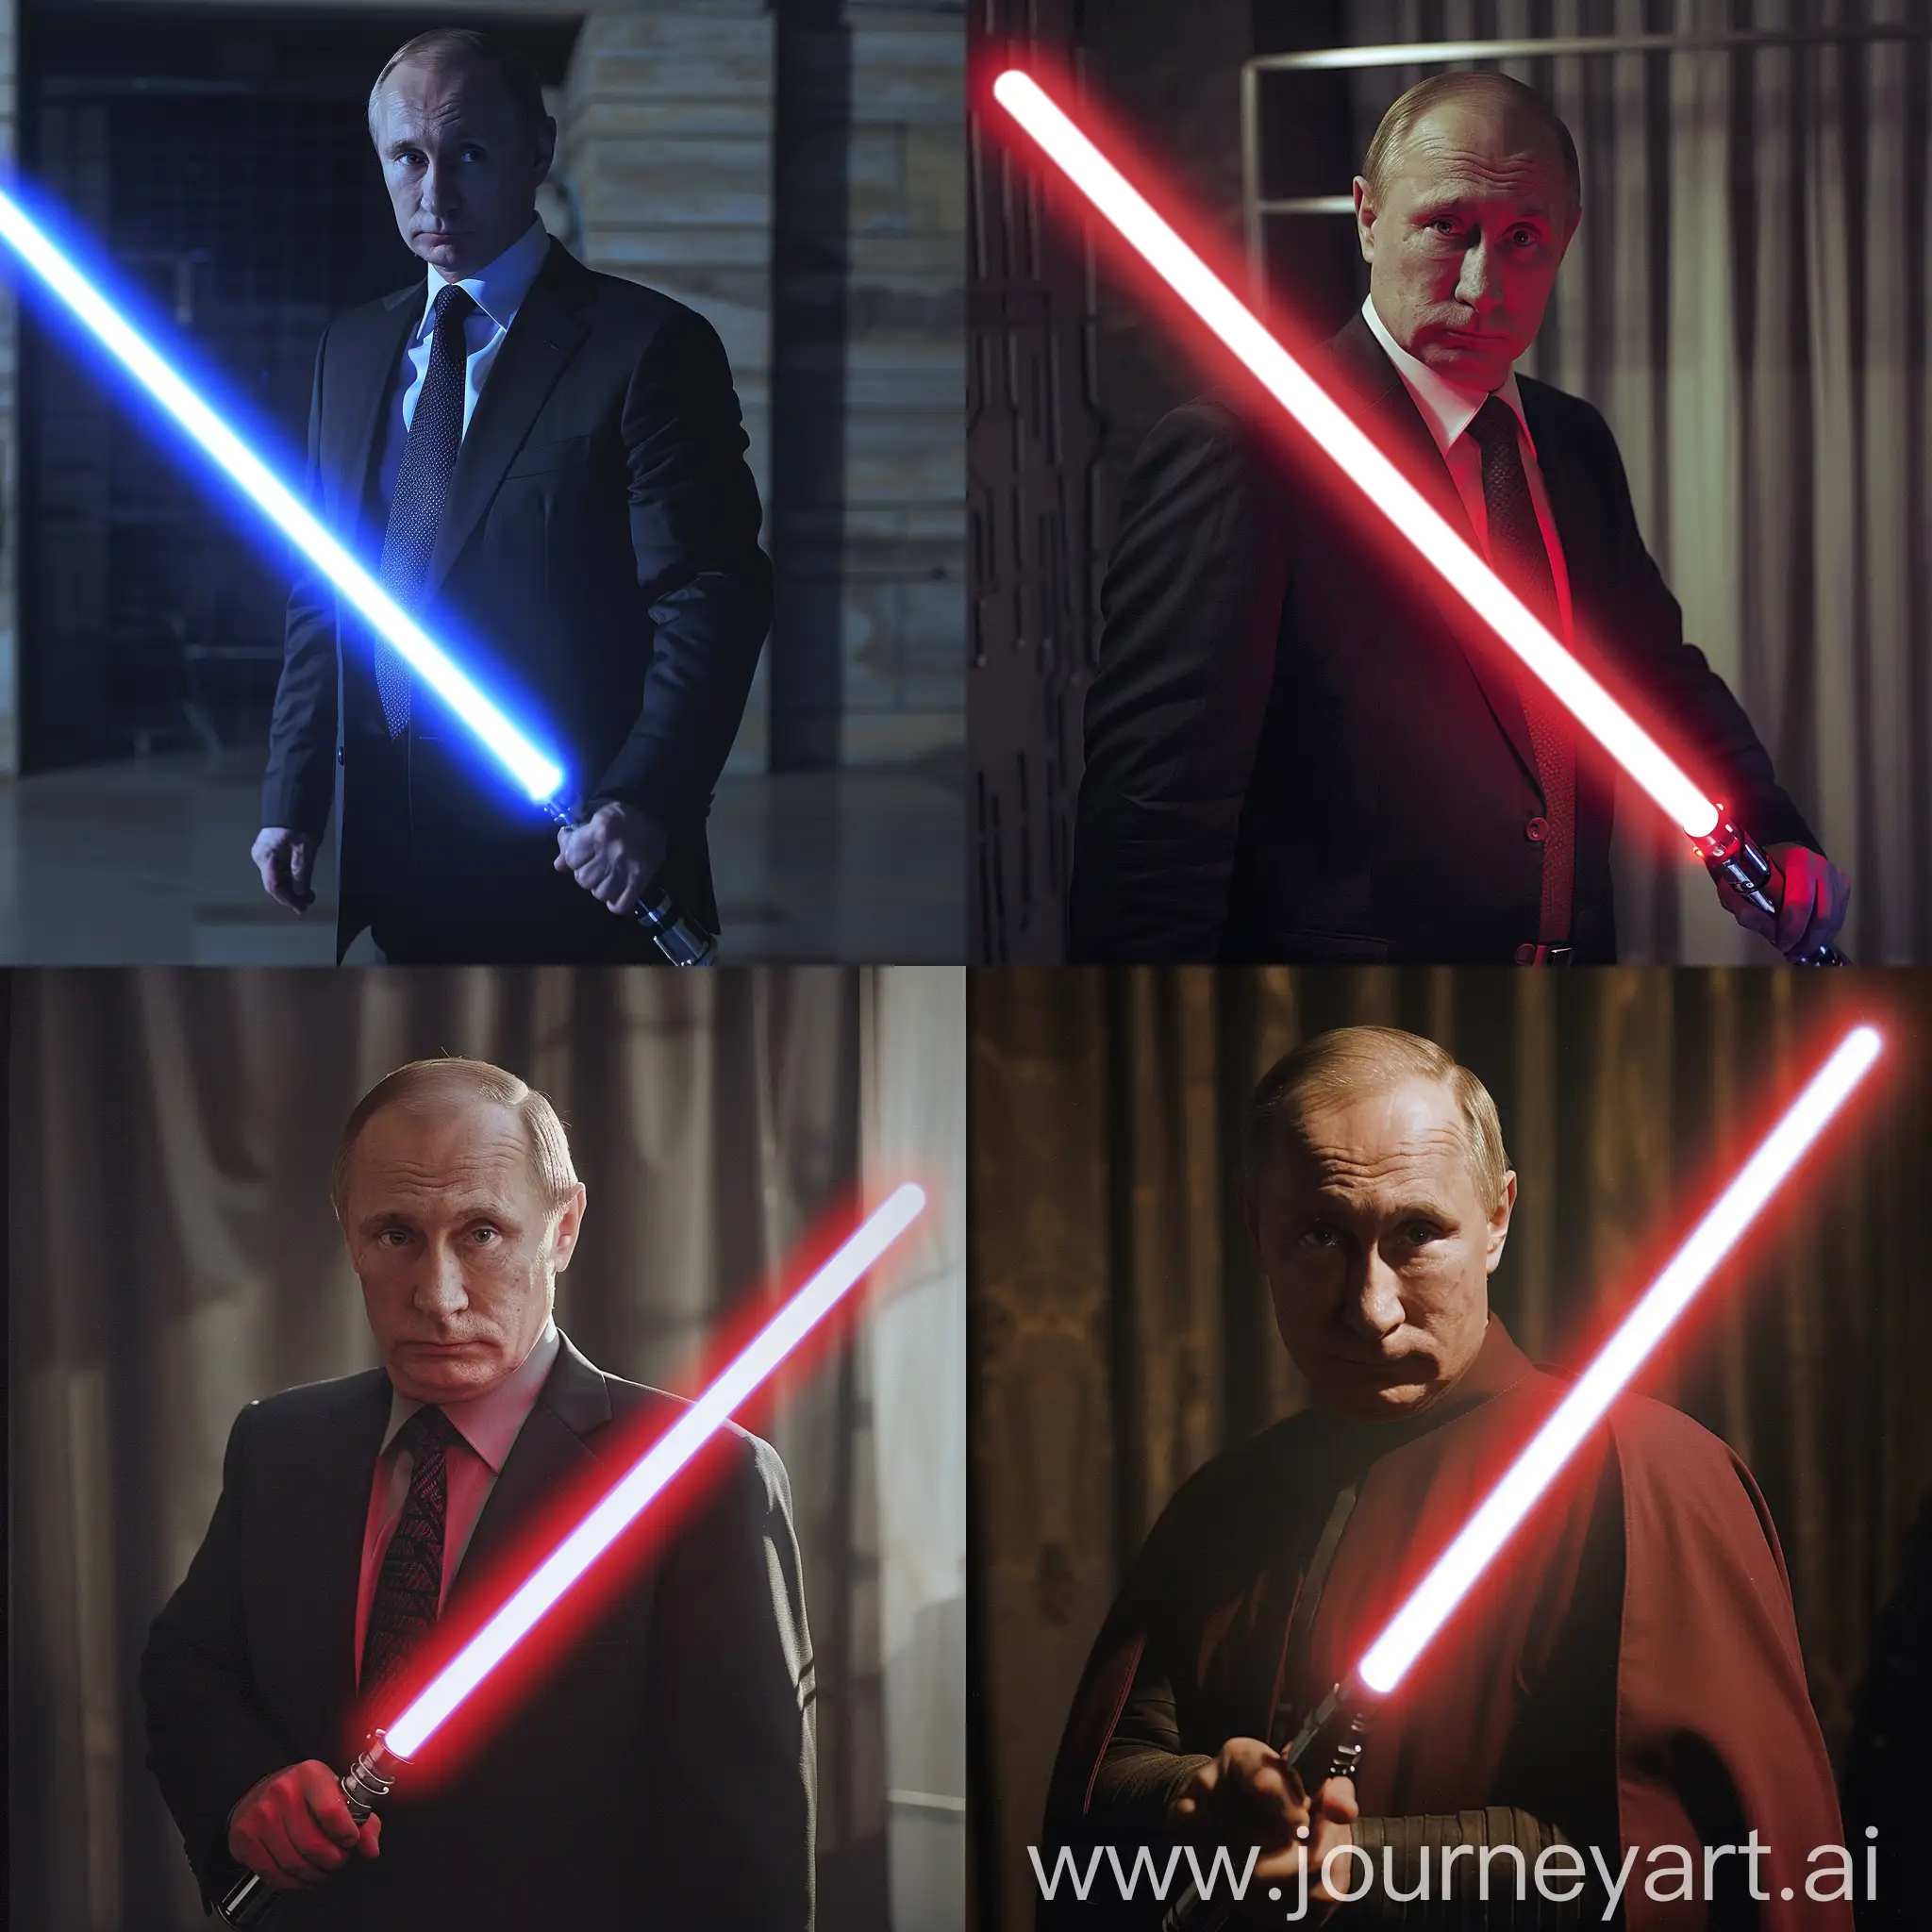 Vladimir-Putin-Wielding-Lightsaber-Power-Play-of-a-Leader